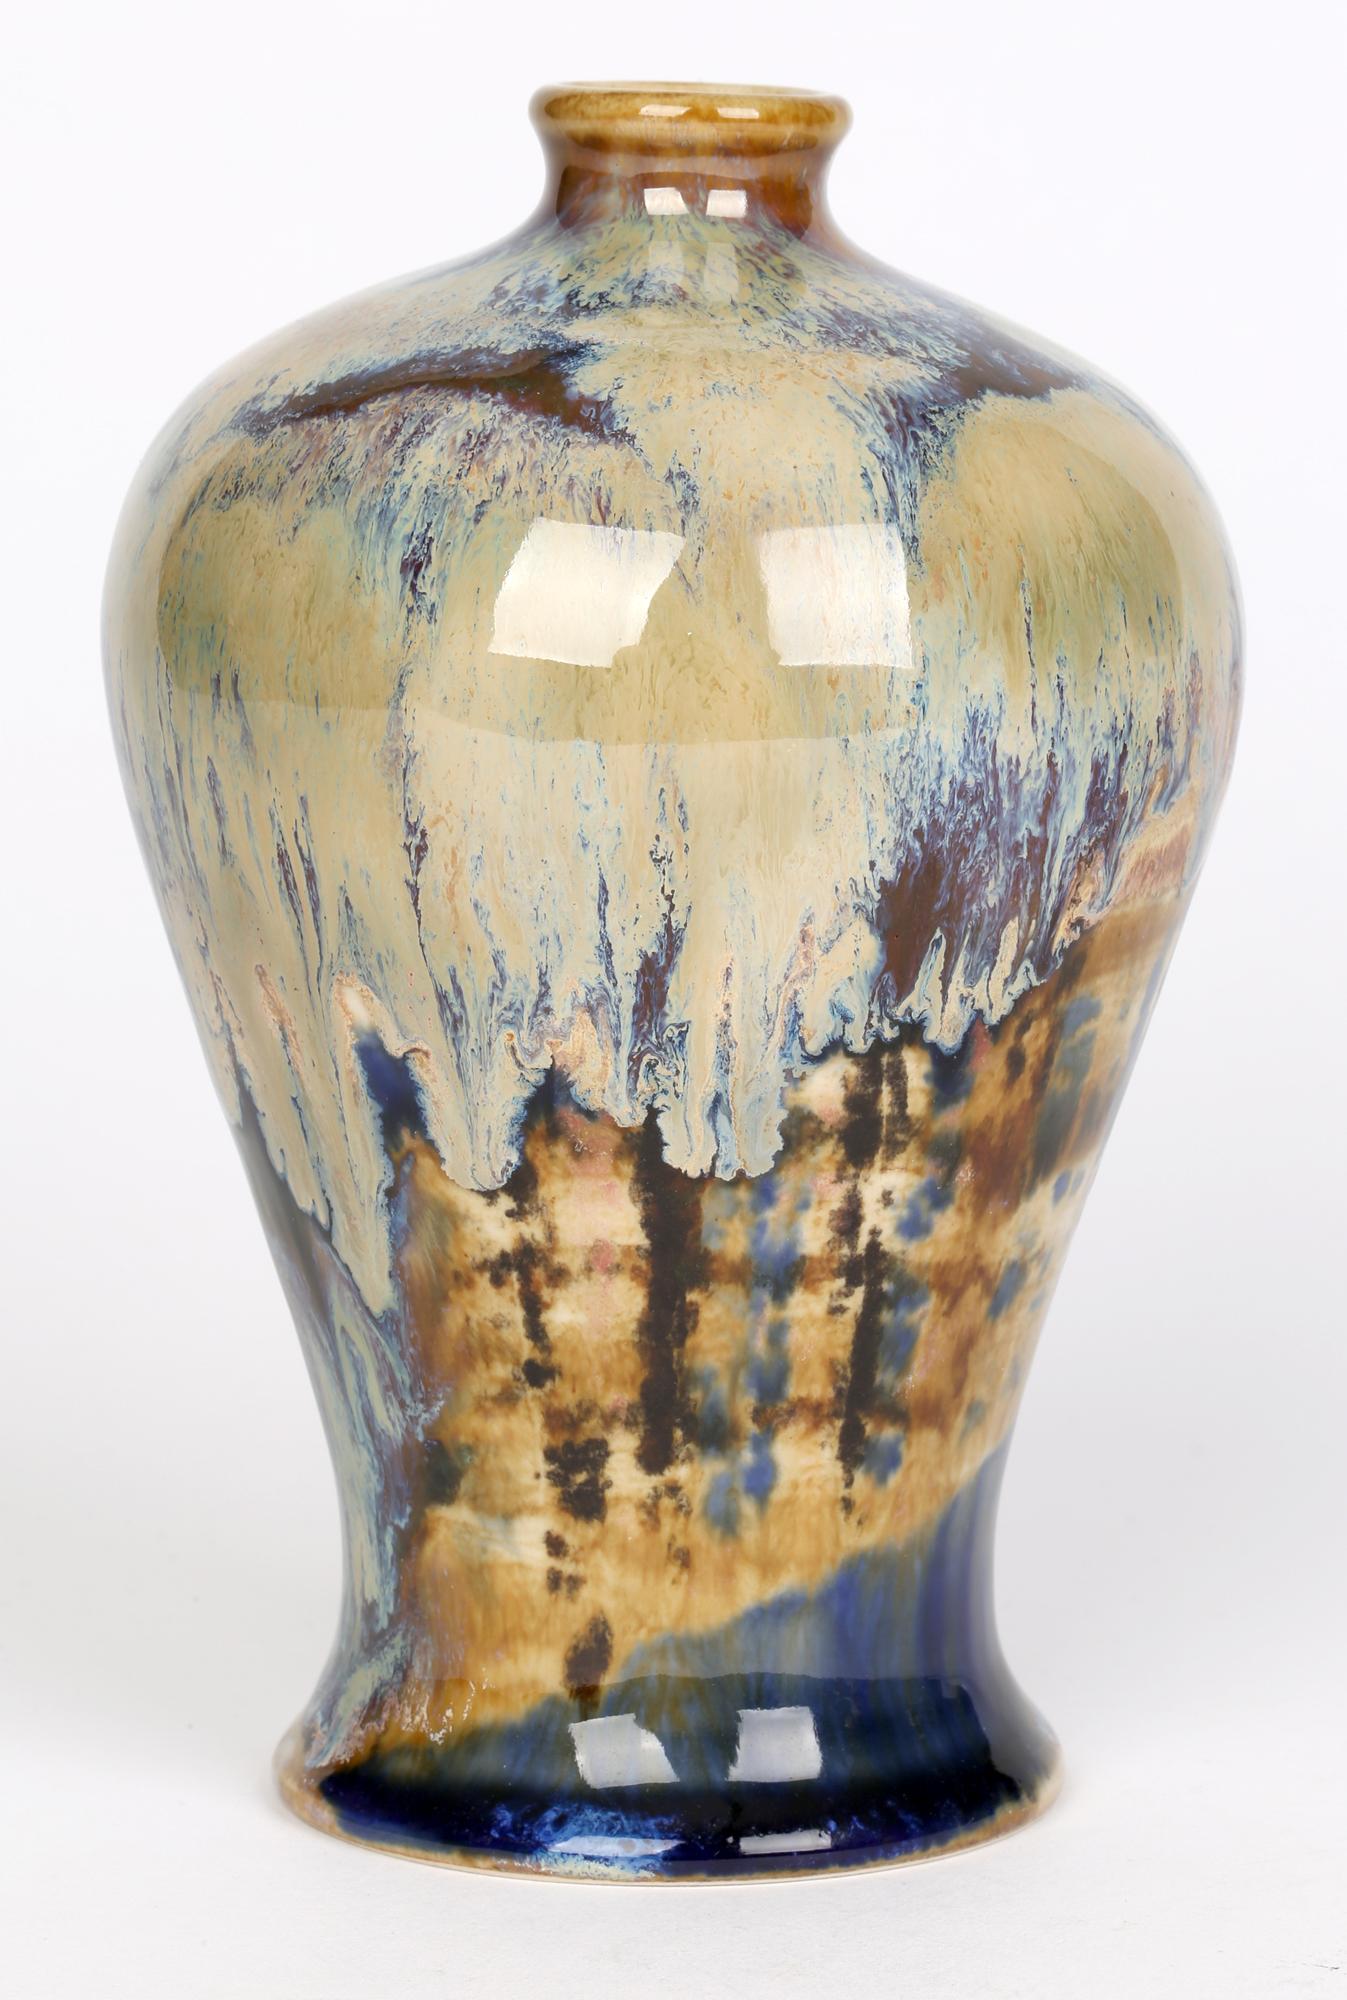 Hervorragende hochgebrannte Cobridge Trial Art Pottery Baluster Vase, entworfen von Andrew Hull und datiert 2004. Die stark gearbeitete Vase aus Steinzeug hat die Form eines Balusters mit einem umlaufenden Unterteil und einem schmalen, abgerundeten